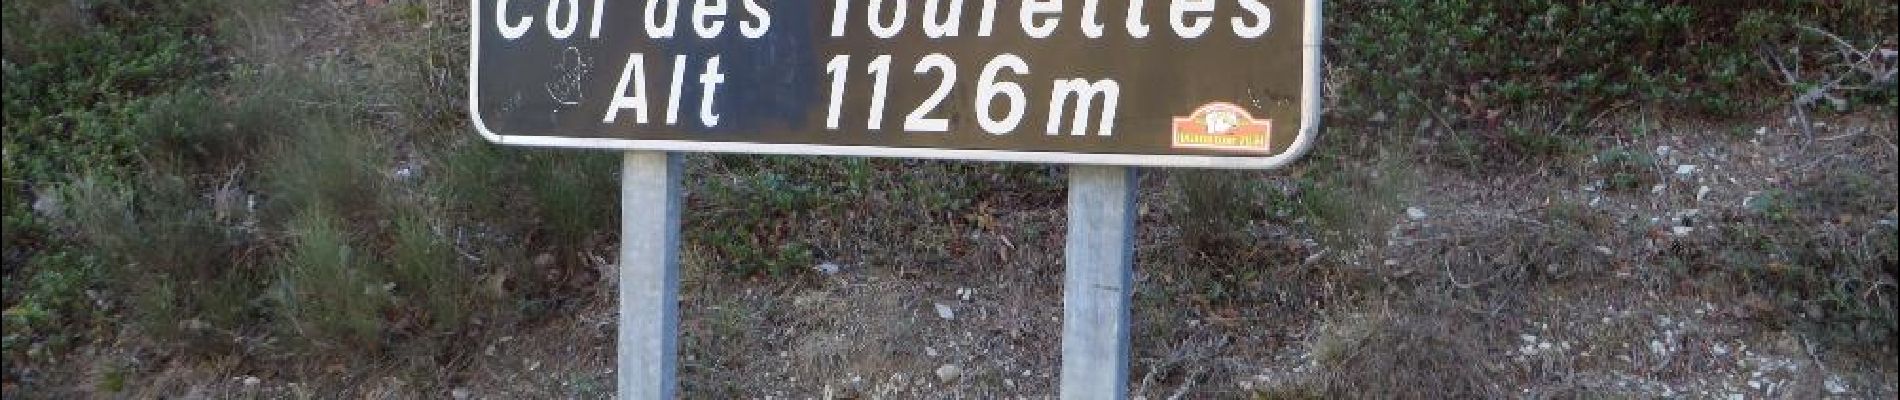 POI Ribeyret - Vers le Col des Tourettes - Photo